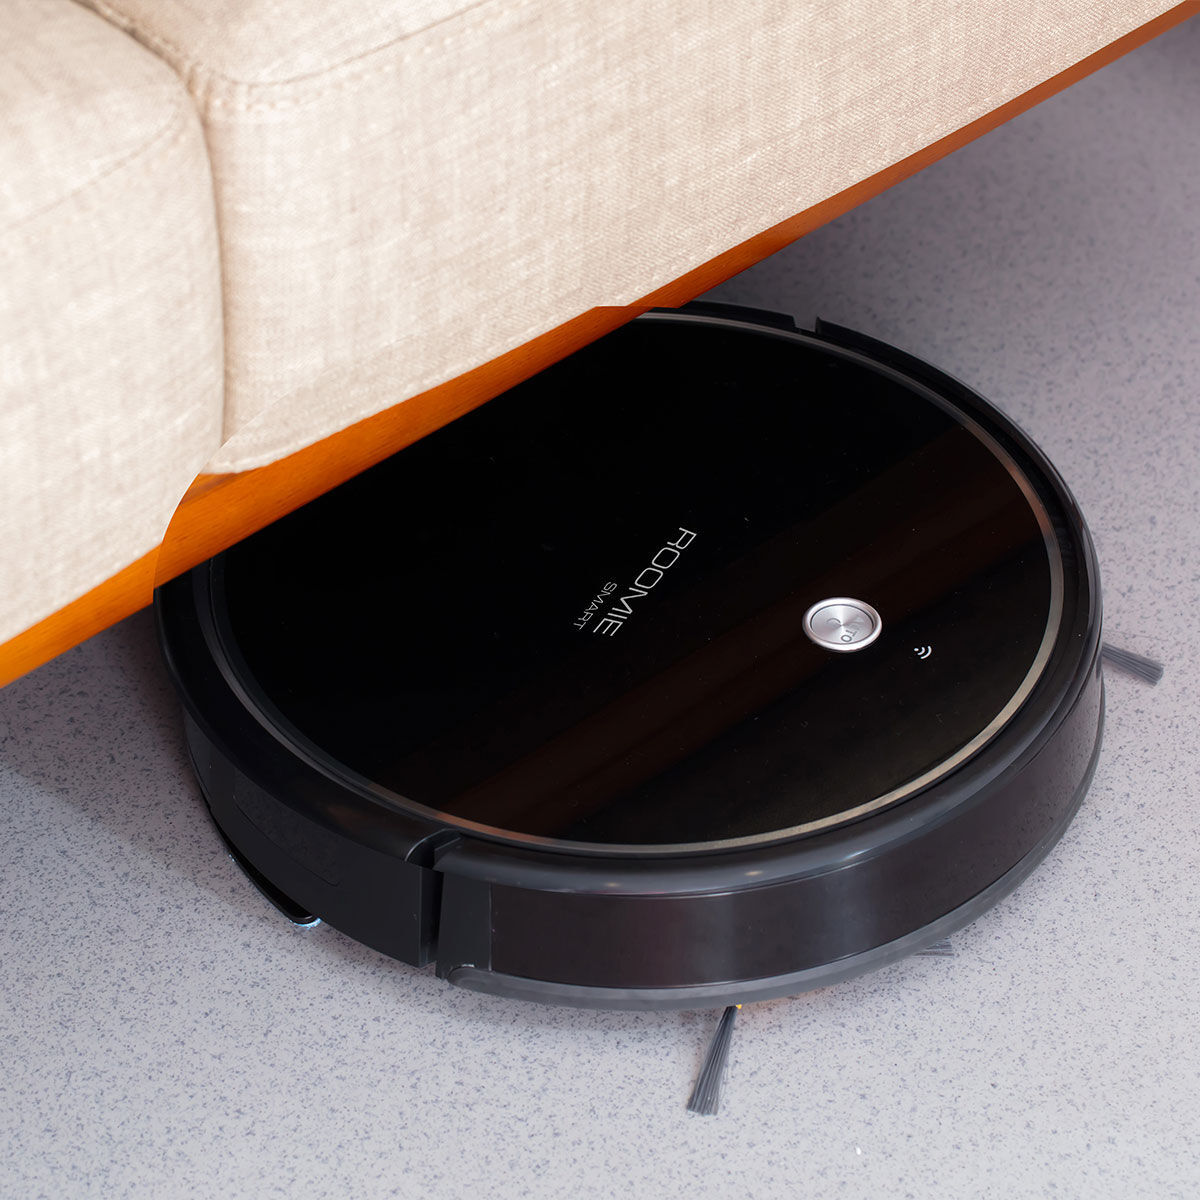 Prixton Roomie Smart Robot Vacuum Cleaner